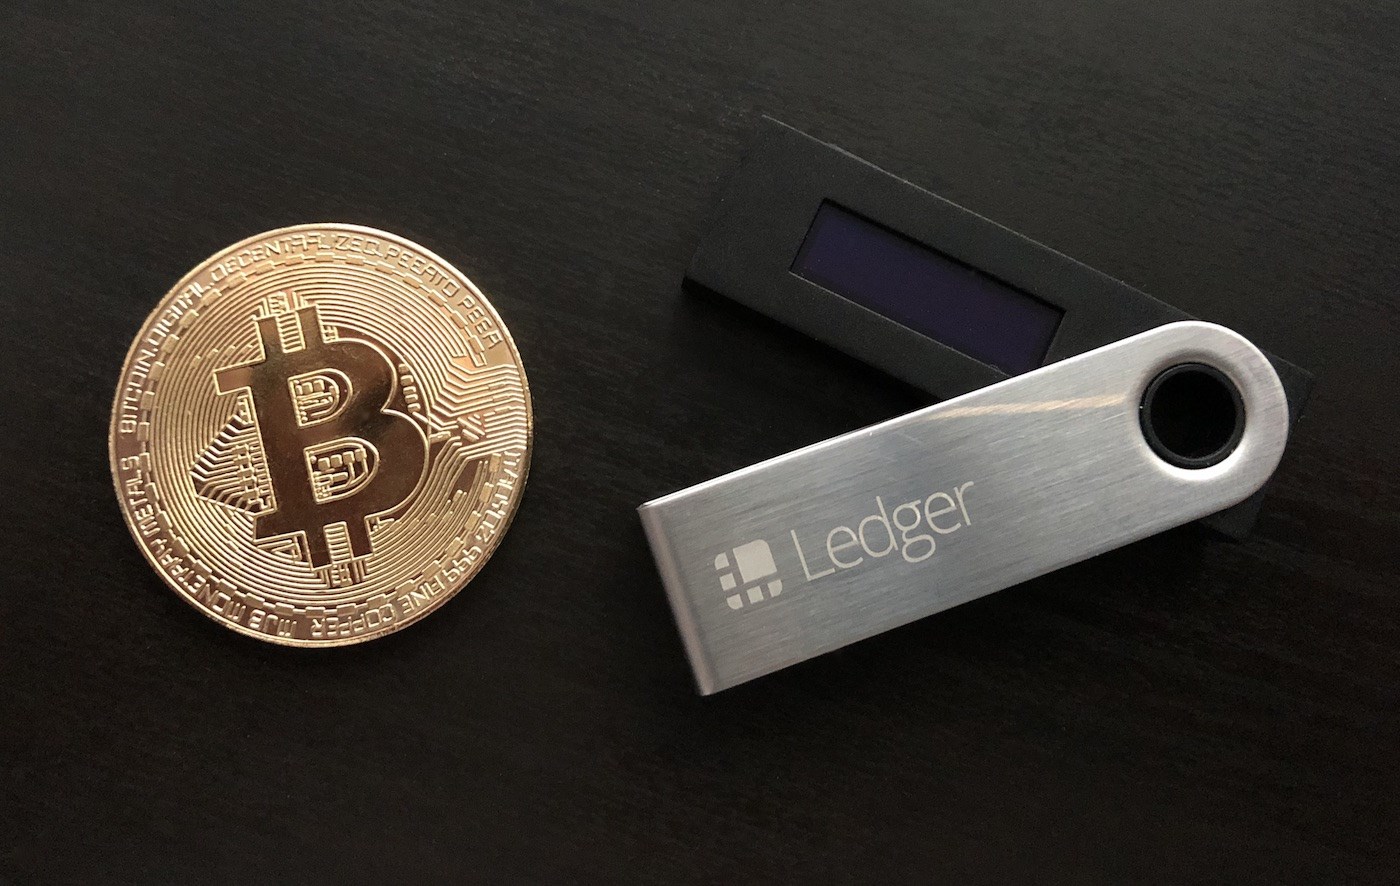 Ledger Eski CEO’su: “Hükümetler kripto cüzdanlara erişebilir”